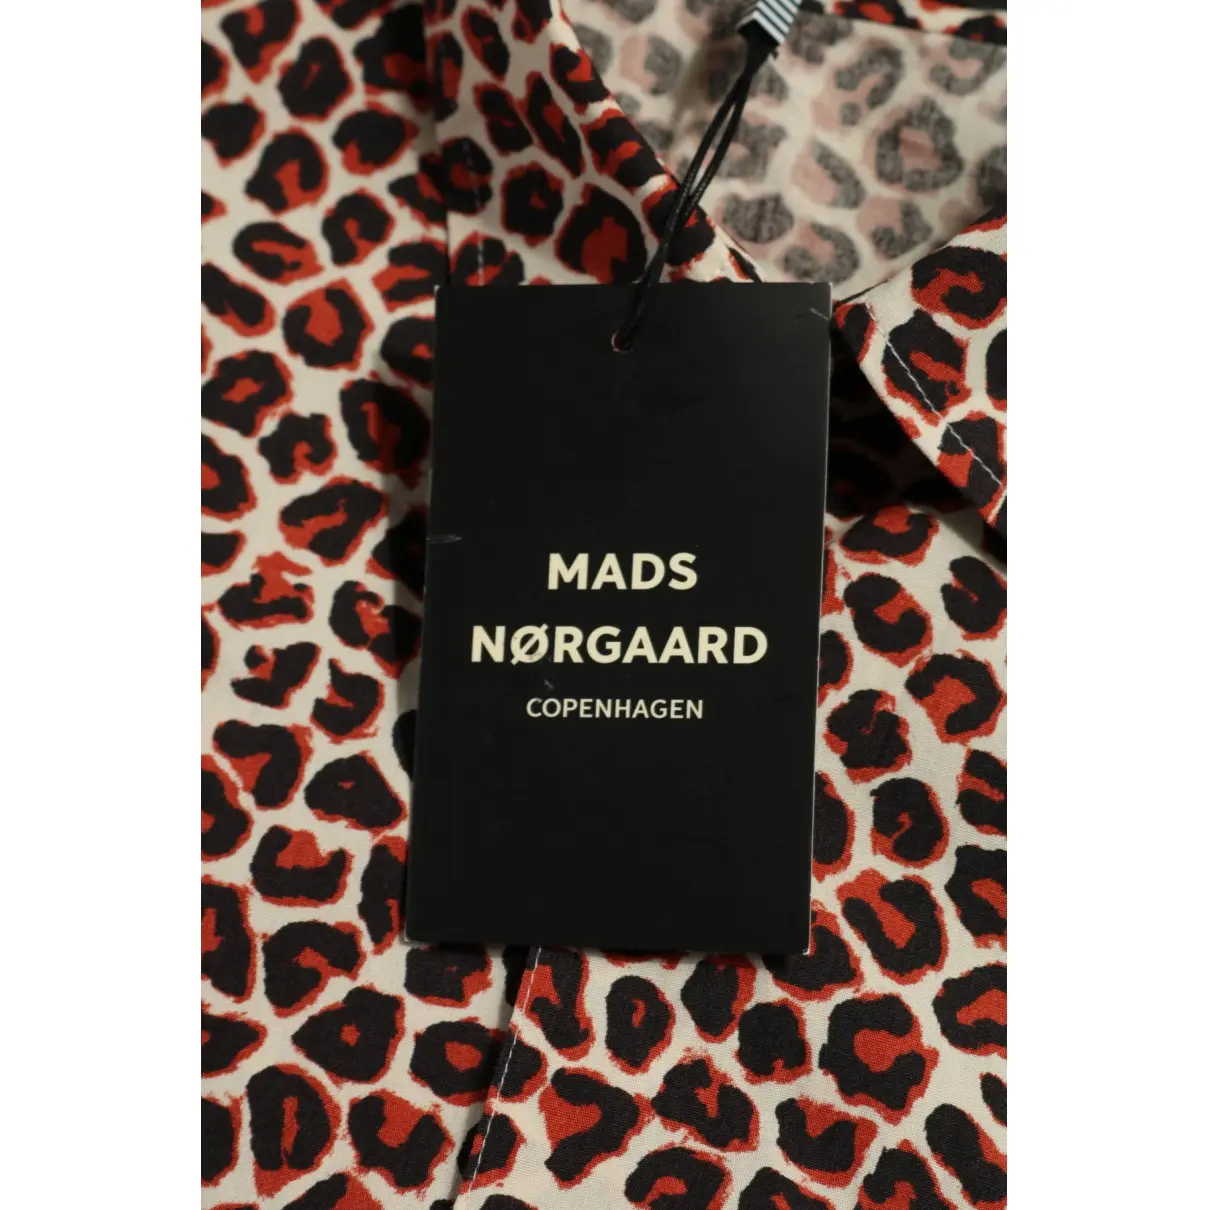 Buy Mads Nørgaard Shirt online